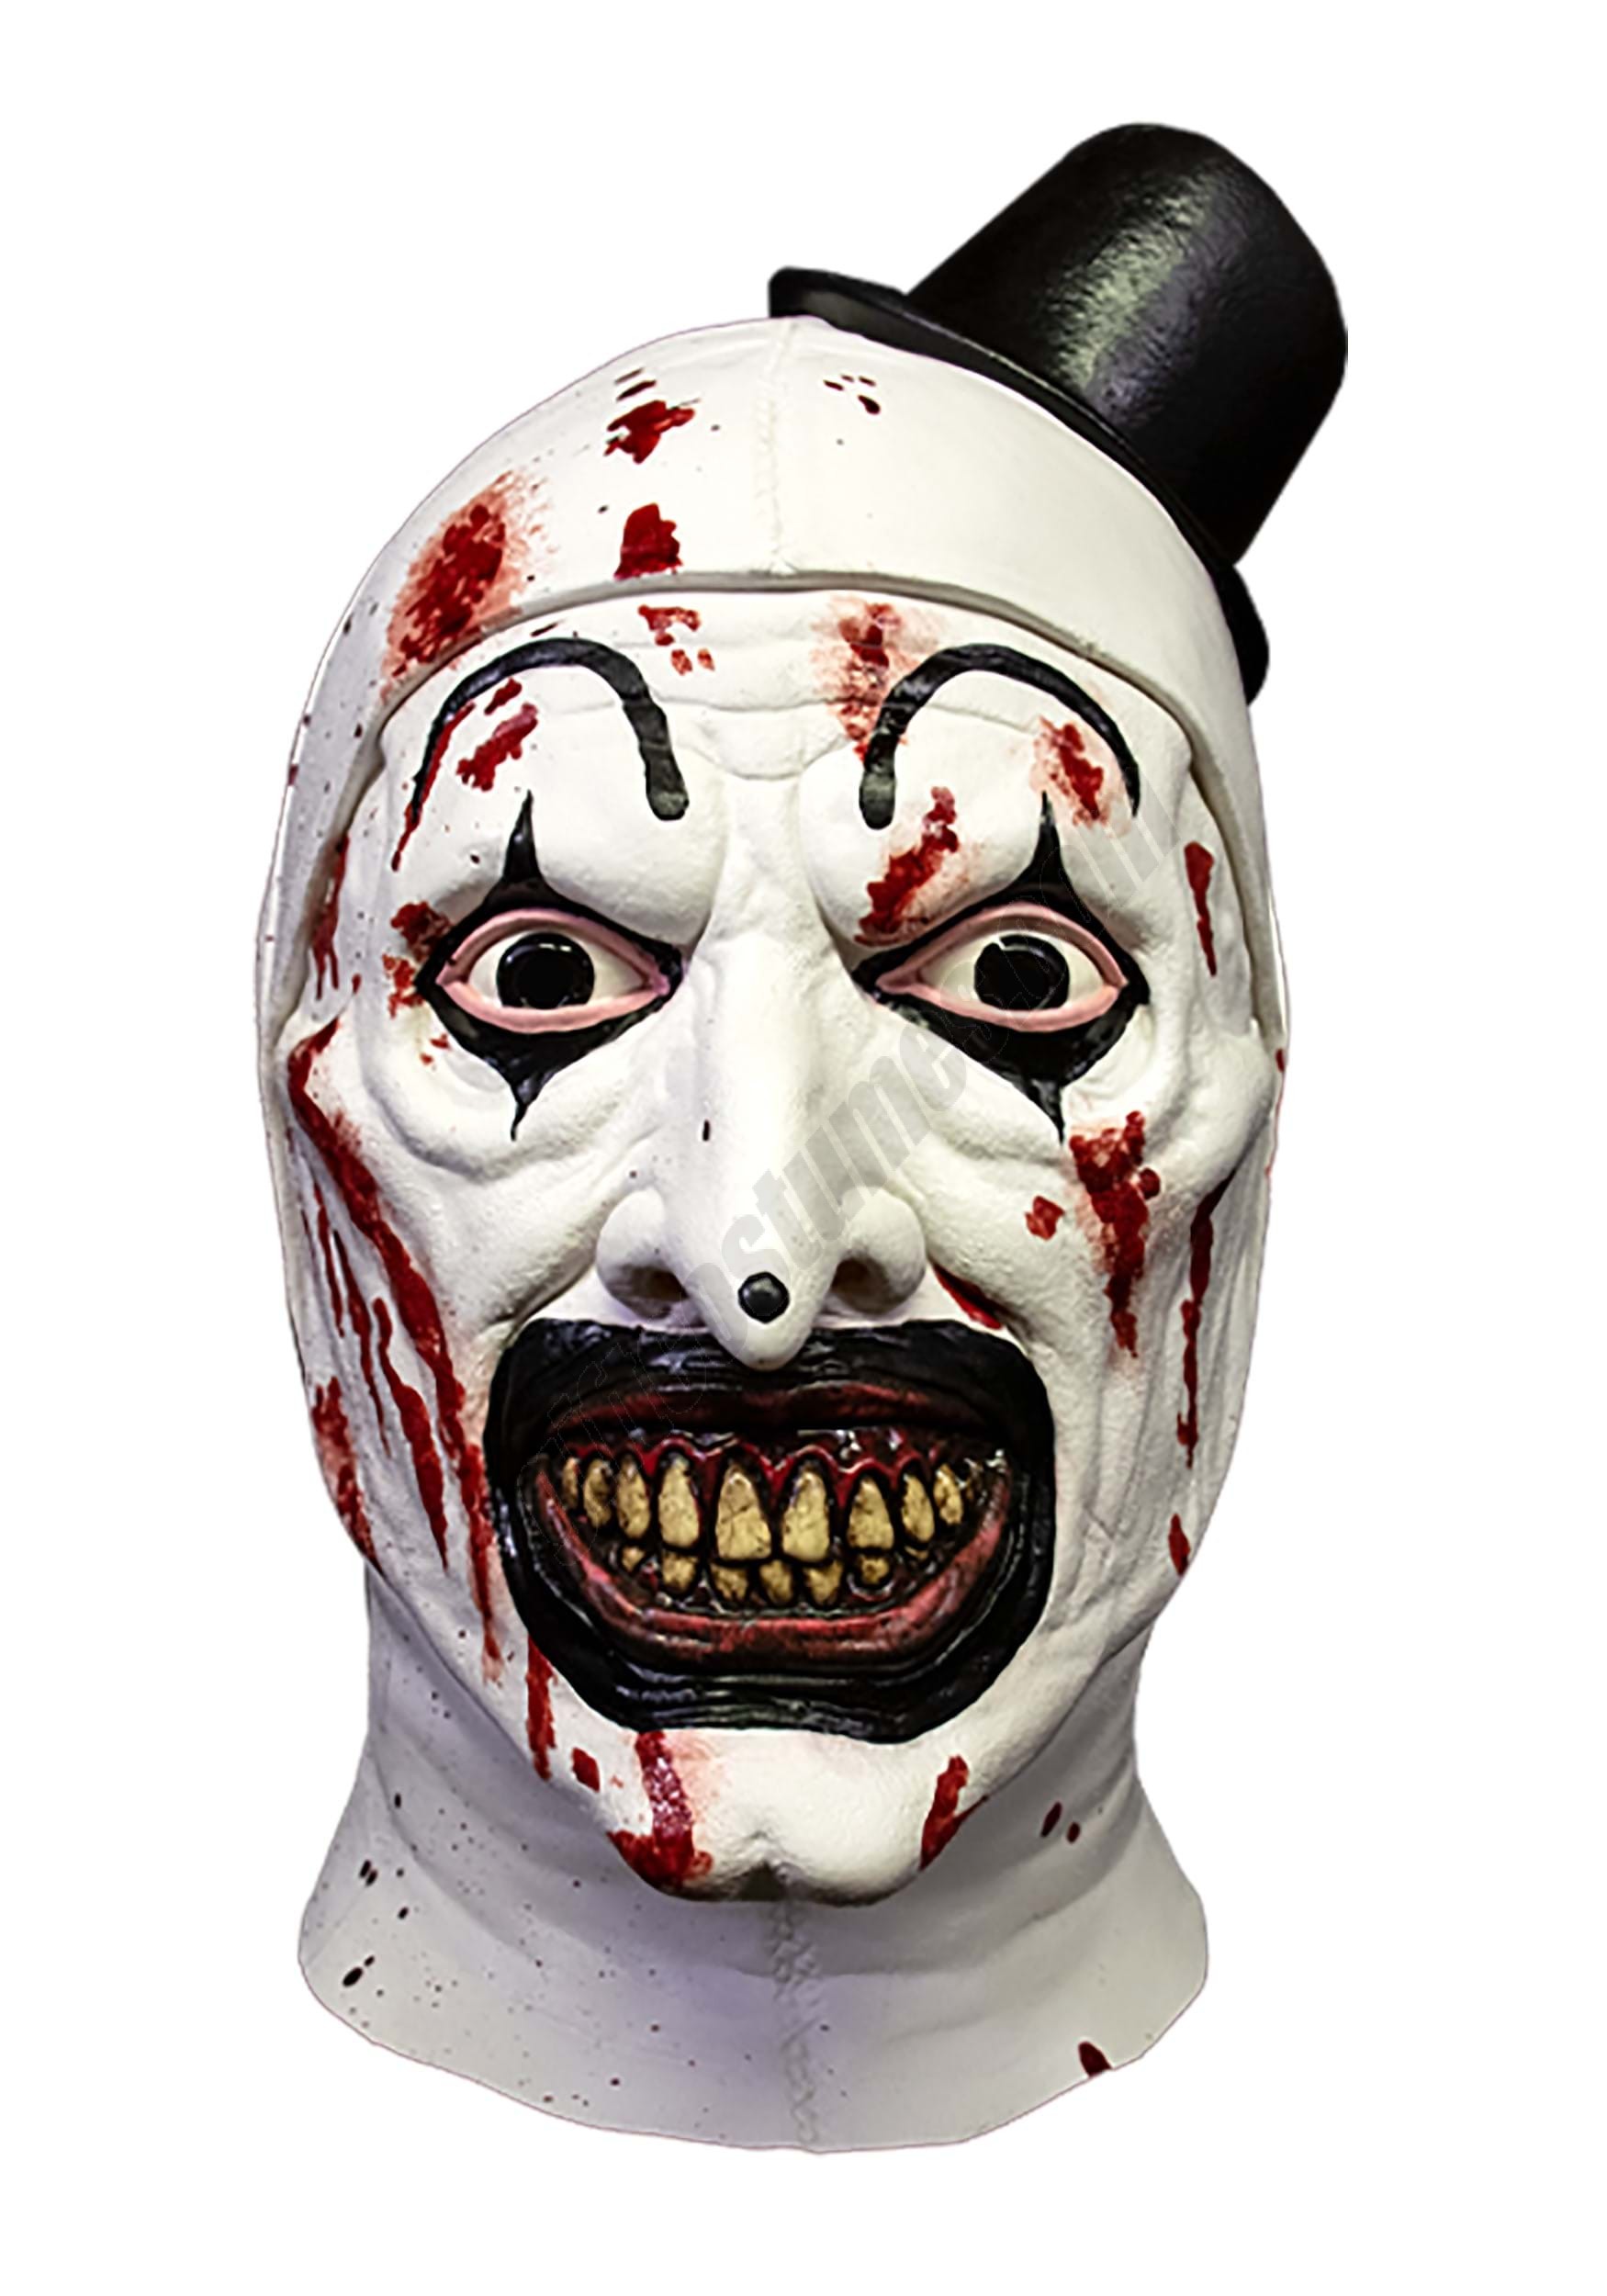 Art Terrifier Killer Mask Promotions - Art Terrifier Killer Mask Promotions